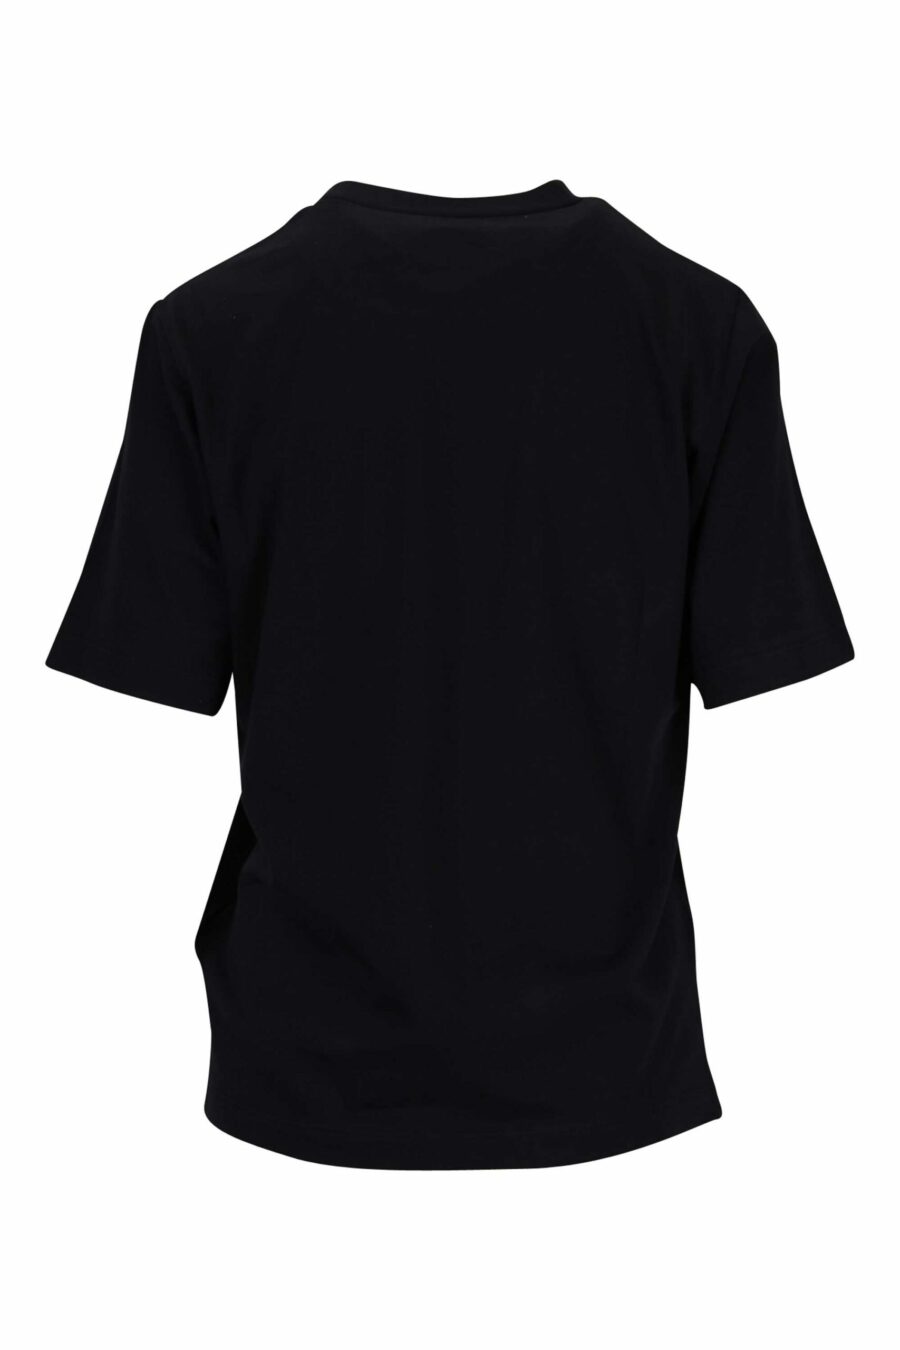 Camiseta negra "oversize" con maxilogo "icon darling" - 8054148405885 1 scaled